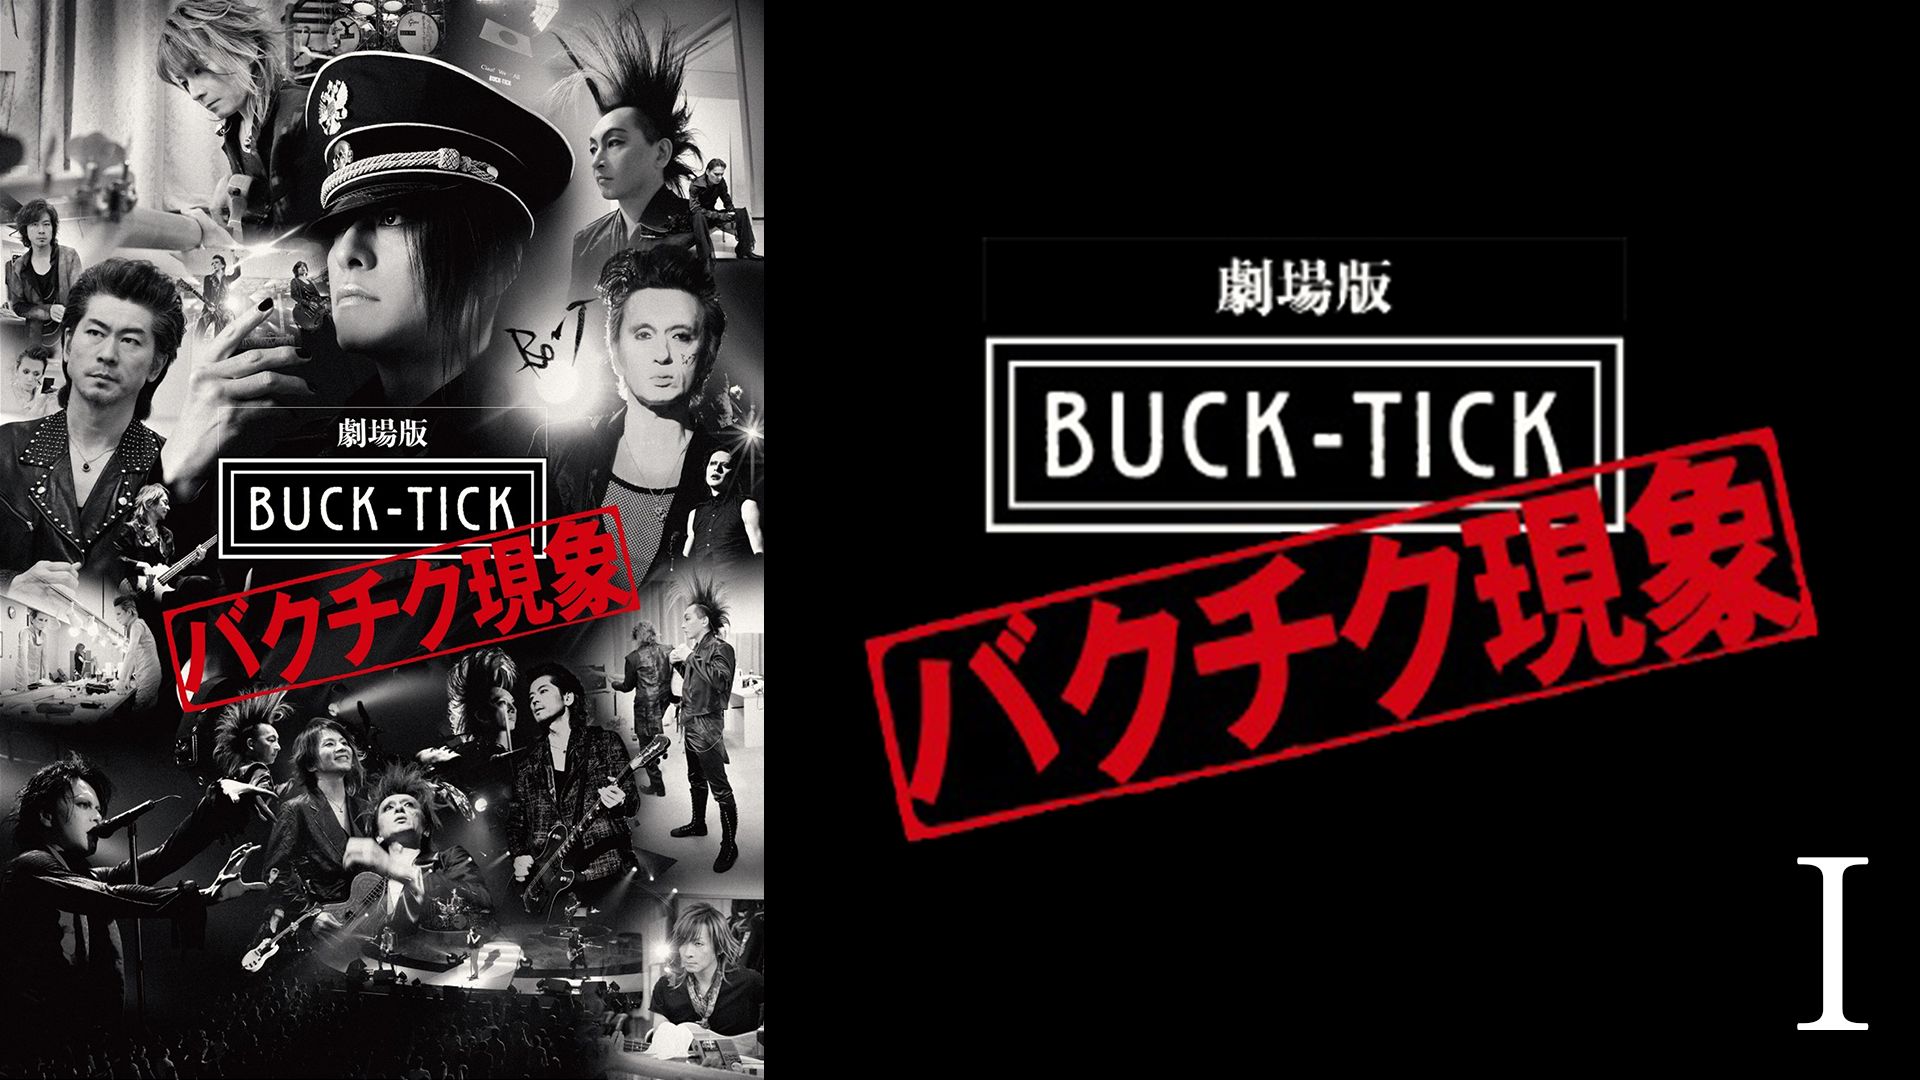 劇場版 BUCK-TICK 〜バクチク現象〜 I